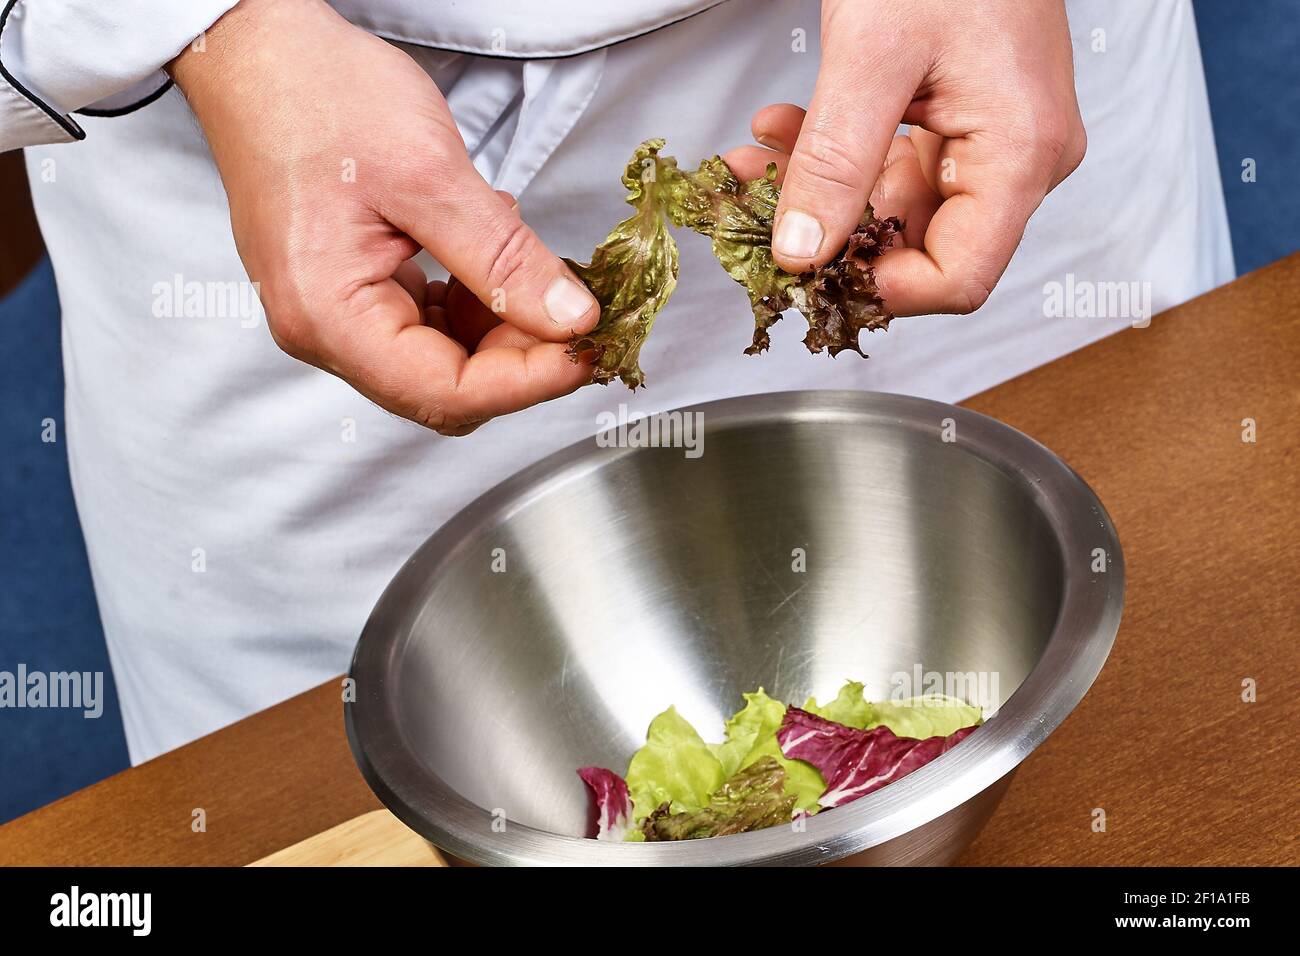 Hände hinzufügen Salatblätter in Schüssel mit Salat, close-up Stockfoto